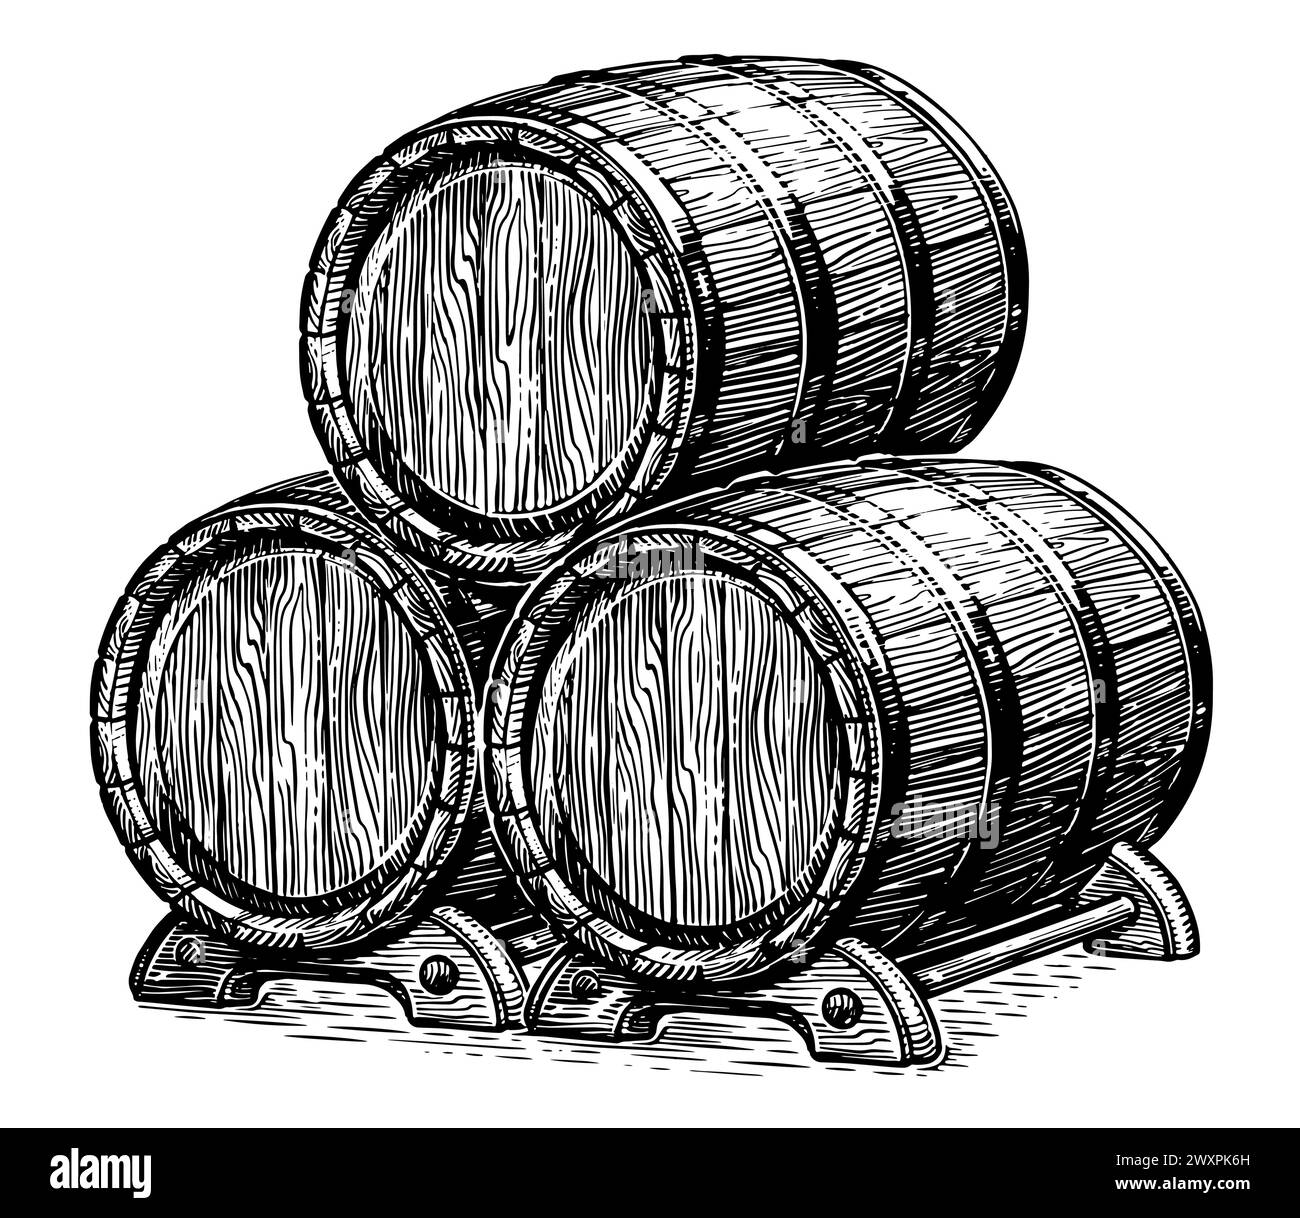 Tre botti di rovere per bevande alcoliche. Fusti di legno con vino o birra. Illustrazione con incisione disegnata a mano Illustrazione Vettoriale